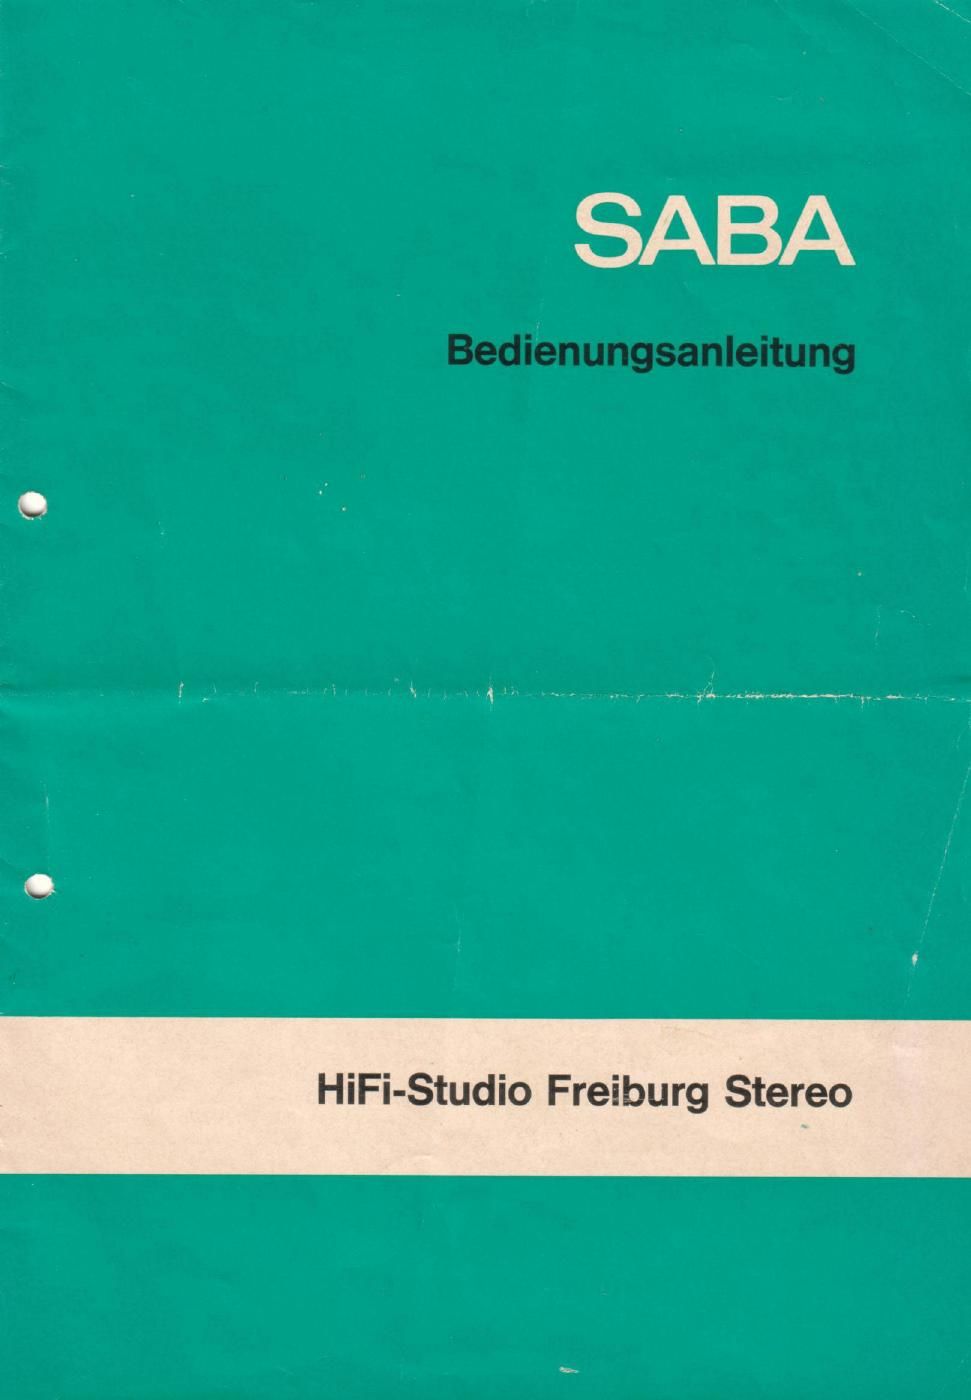 saba studio freiburg stereo bedienungsanleitung